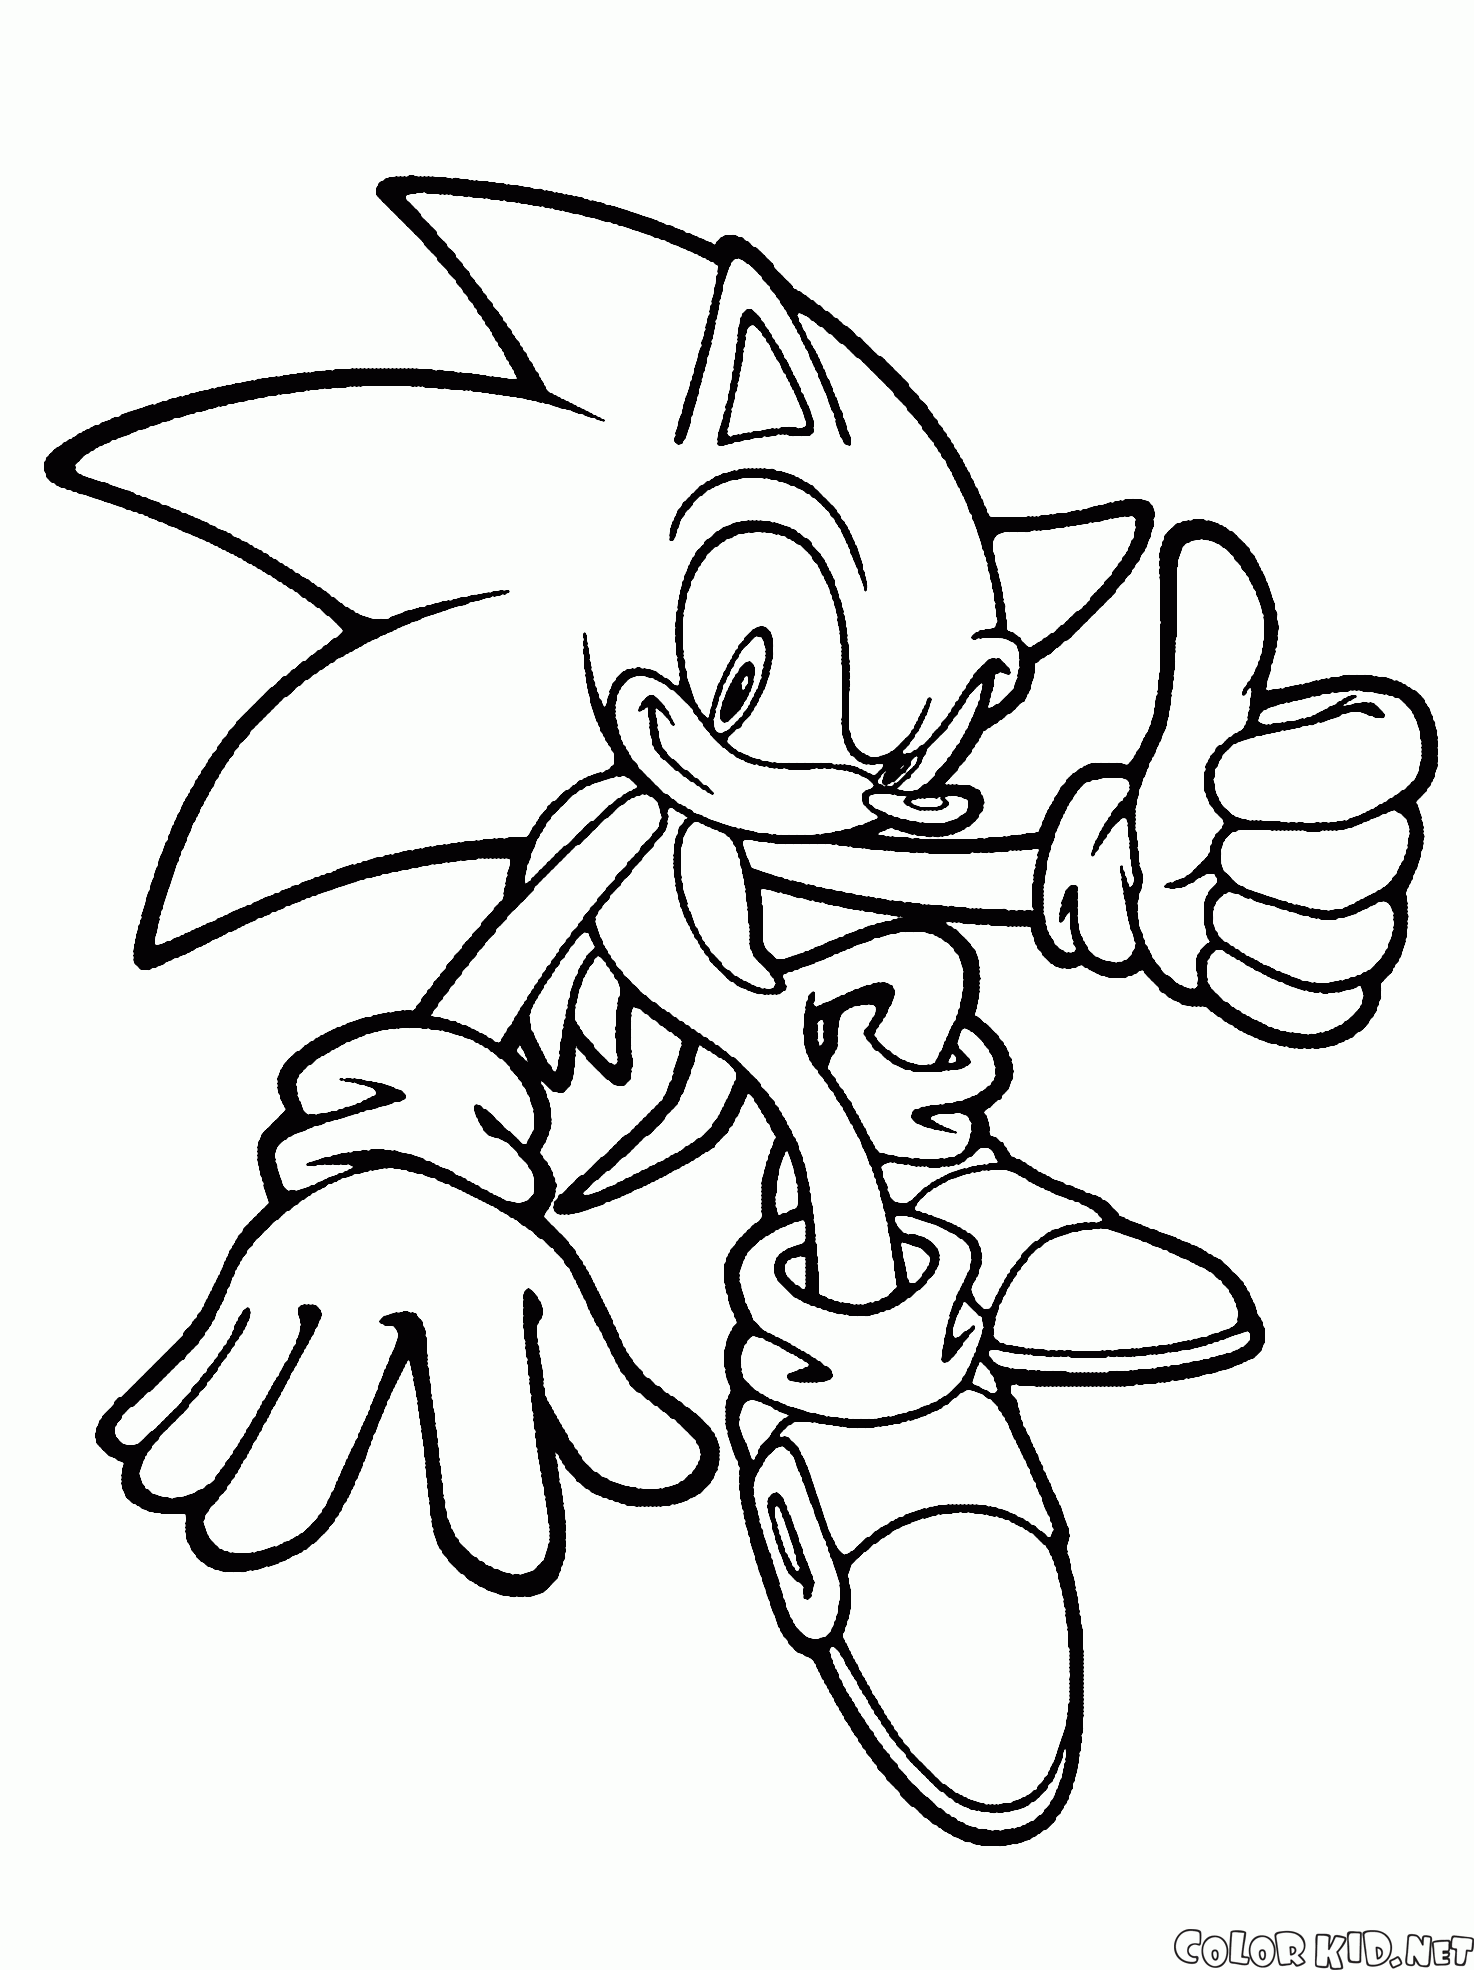 Sonic kämpft für Gerechtigkeit